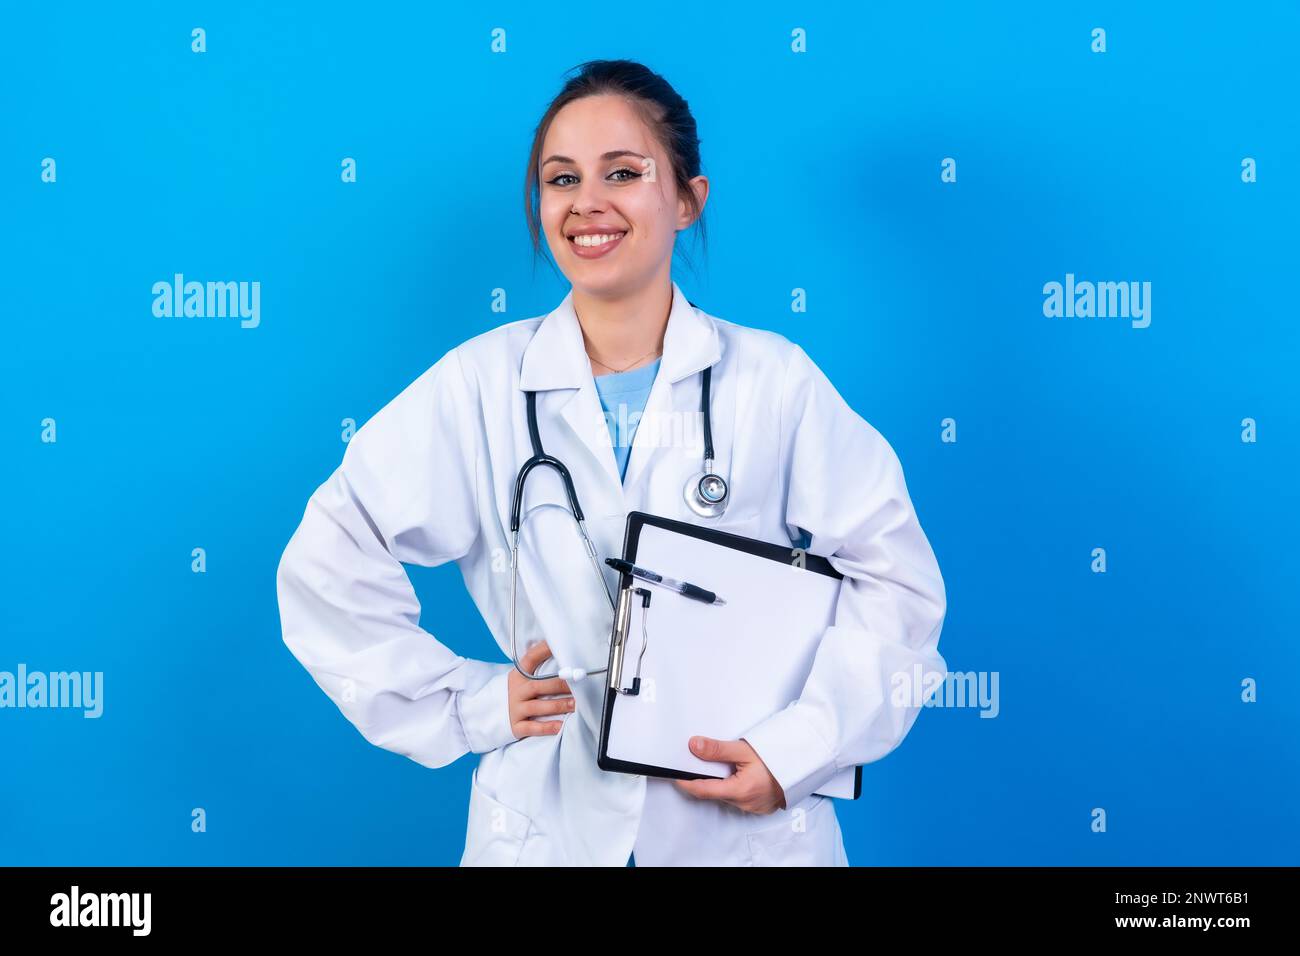 Portrait de femme souriante médecin en robe médicale debout isolée sur bleu, concept de médecine Banque D'Images